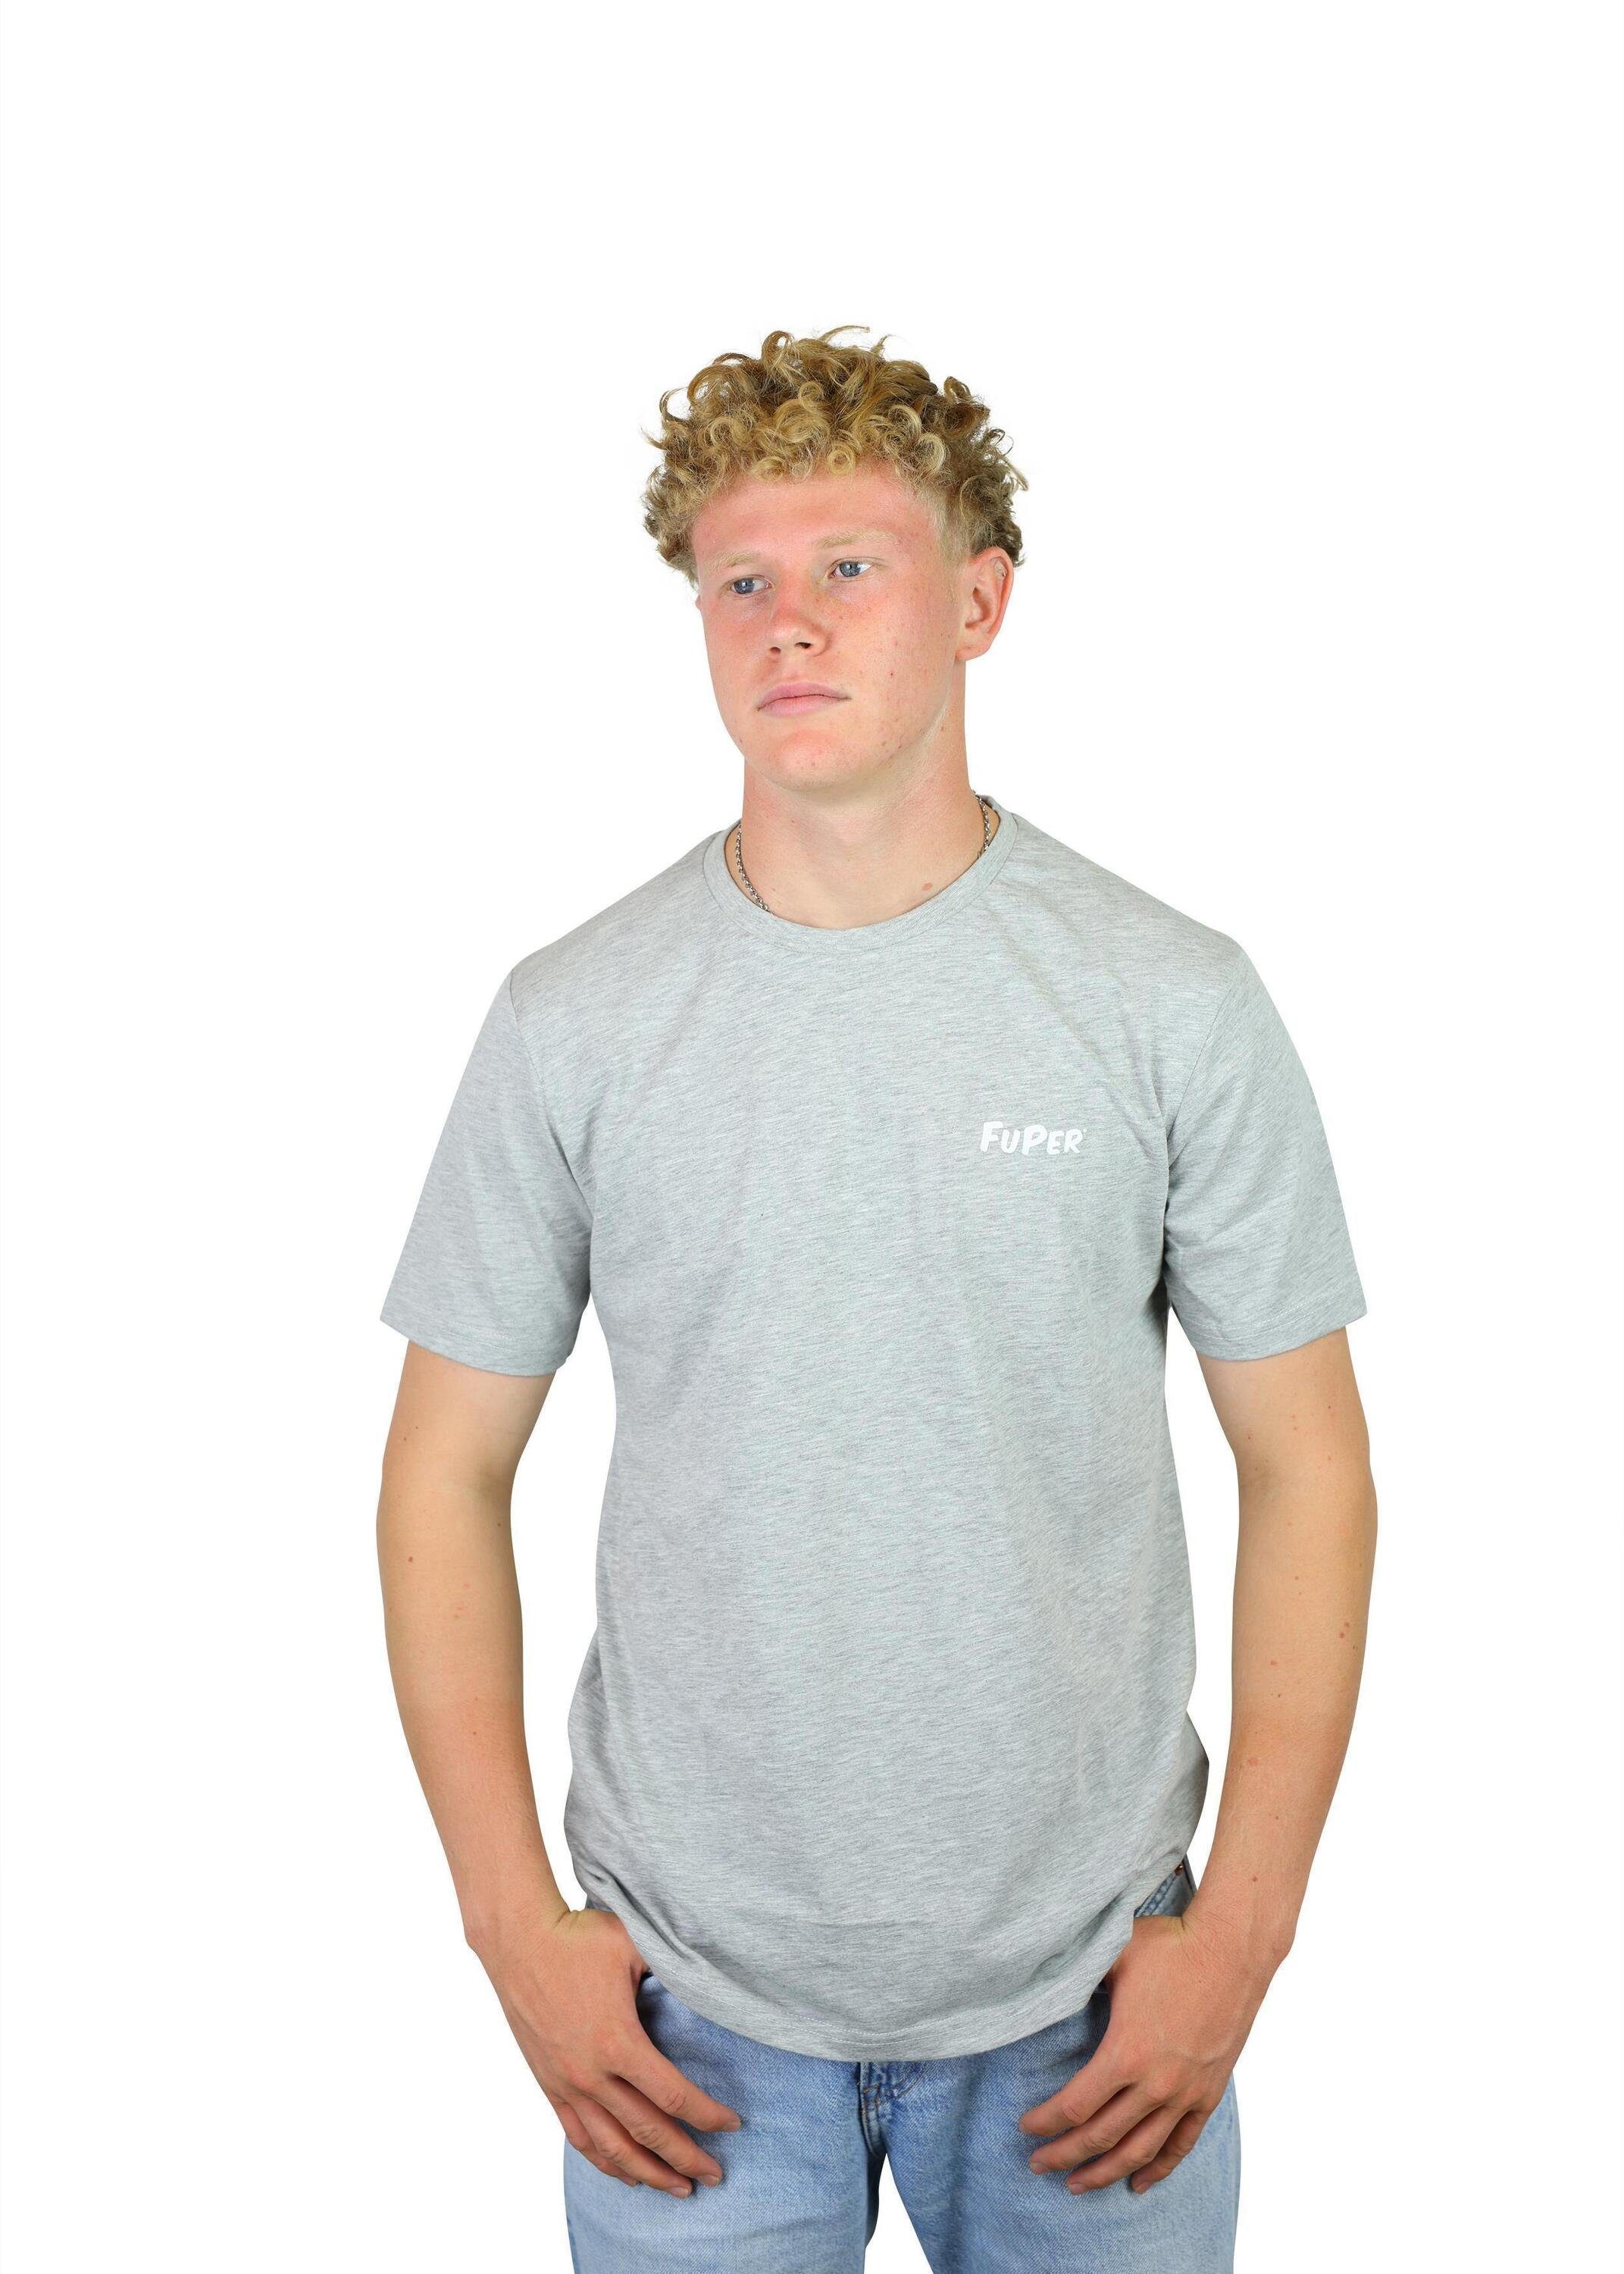 Grey Luis T-Shirt Kinder, FuPer aus Jugend Fußball, Baumwolle, für